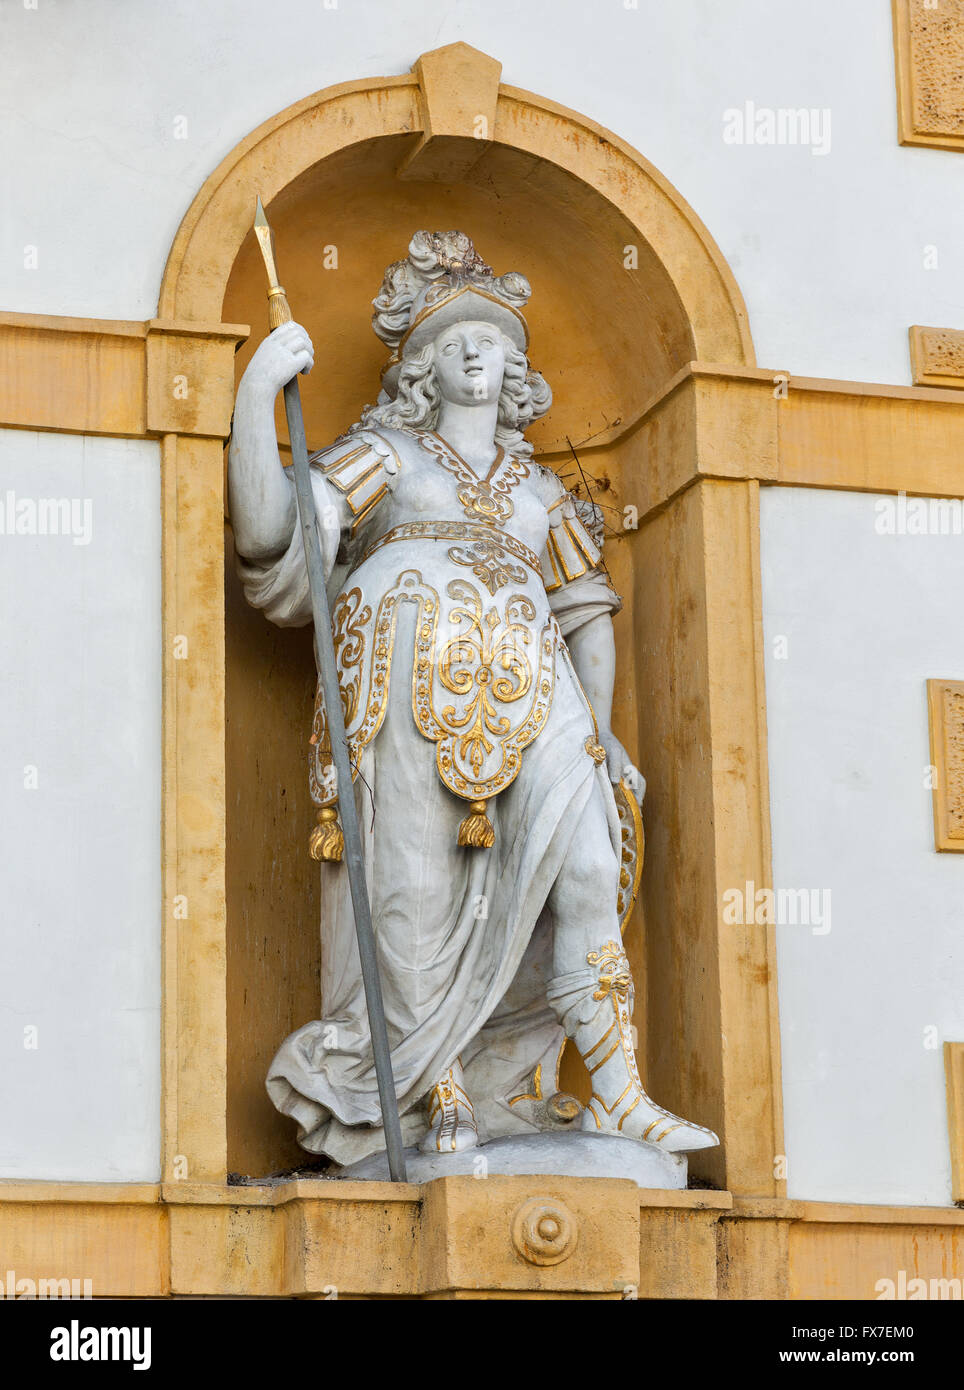 Ciudad vieja arquitectura en Graz, Estiria, Austria. Estatua en la fachada de la casa. Foto de stock